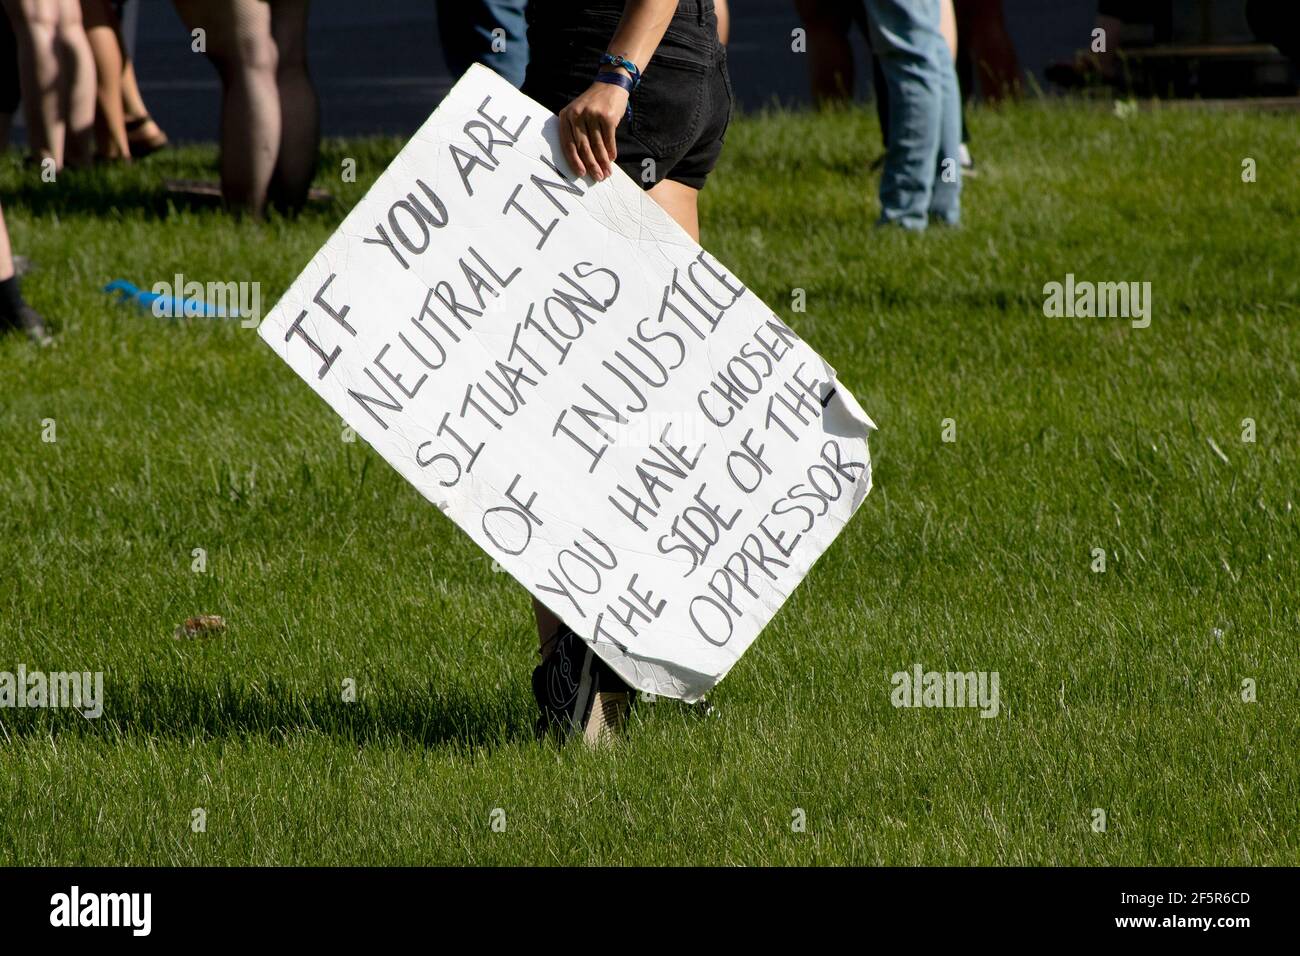 Mano blanca sosteniendo un cartel hecho para la protesta pacífica sobre social justicia Foto de stock